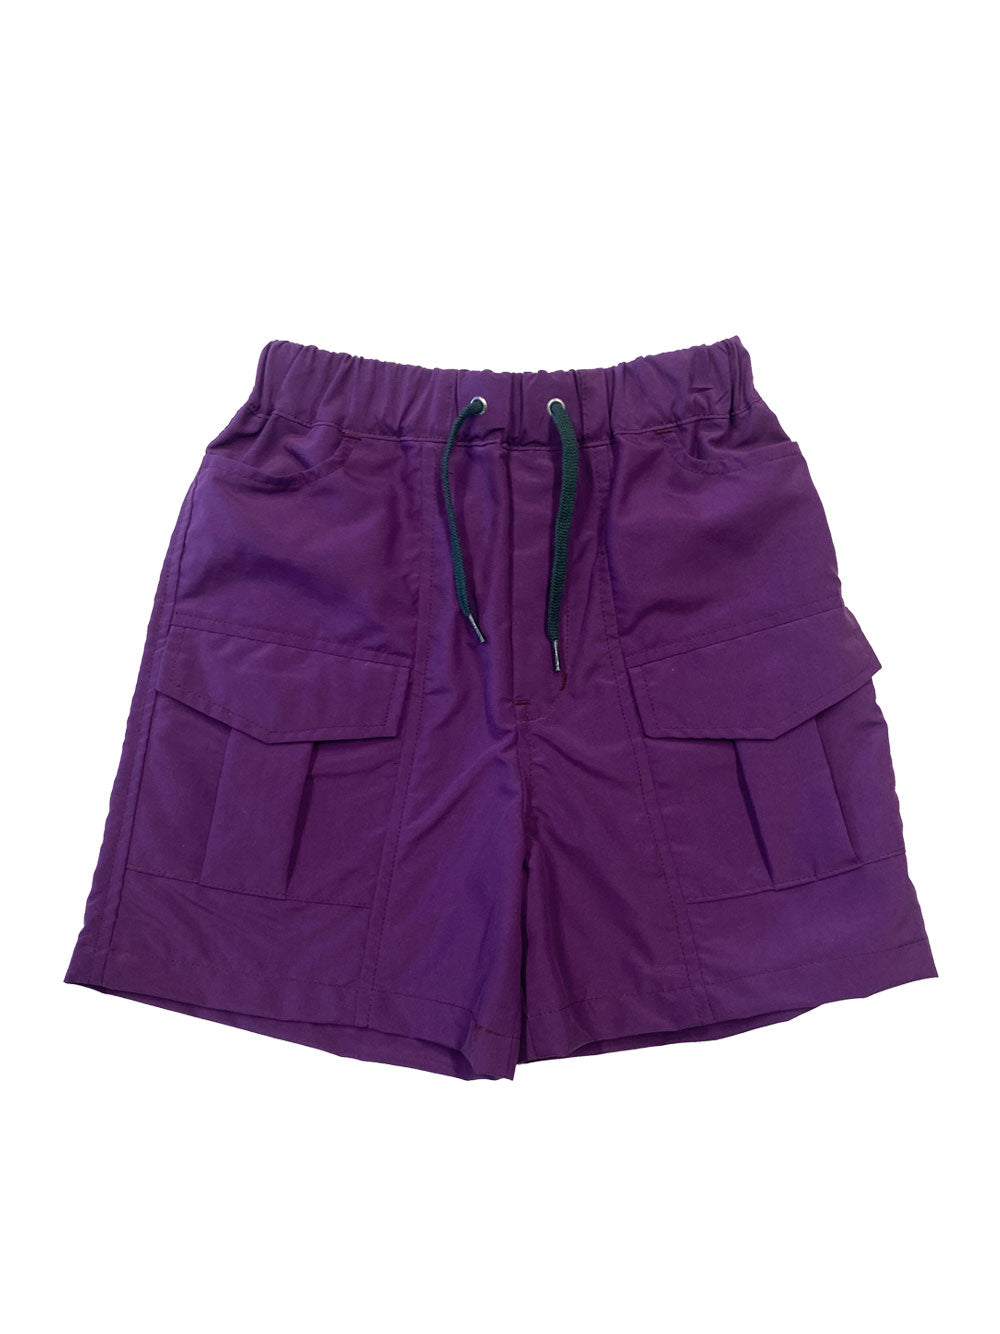 Purple Pleated Pocket Shorts